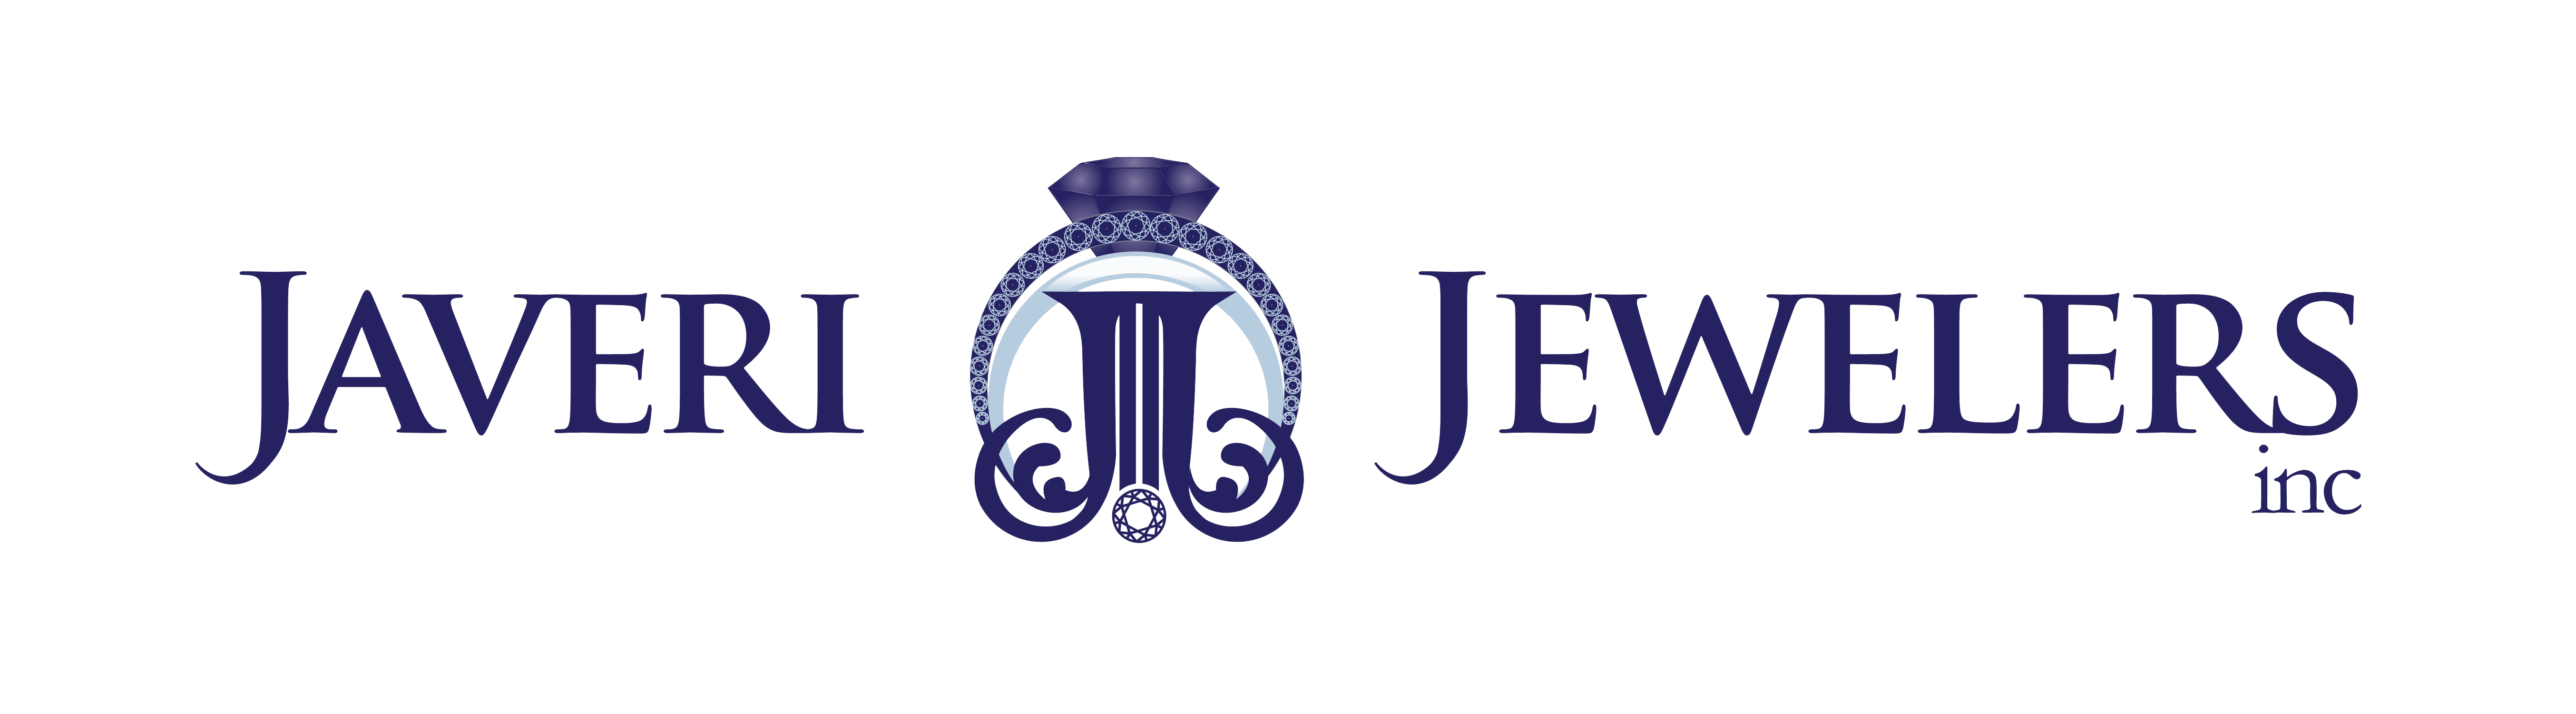 Javeri Jewelers Inc logo